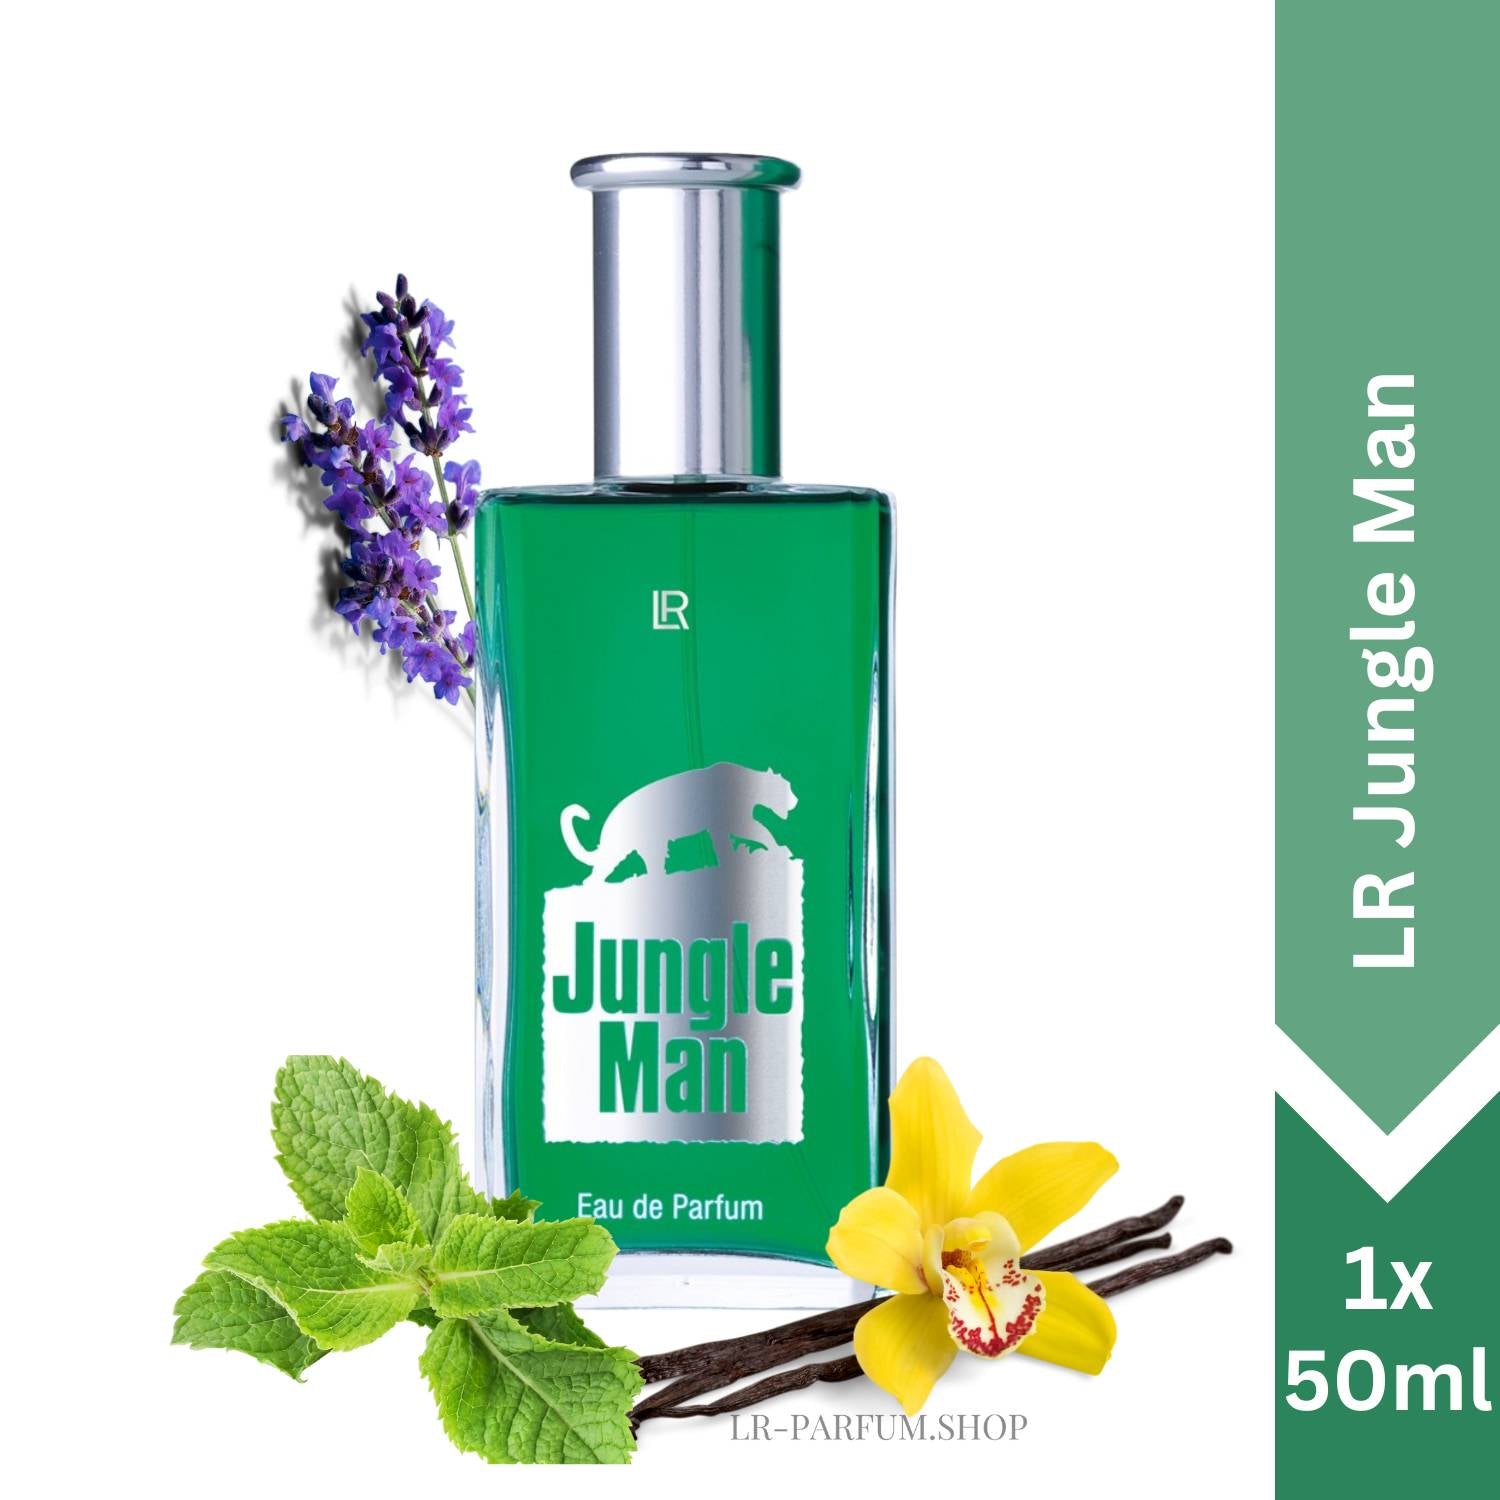 LR Jungle Man - Eau de Parfum 50ml - LR-Parfum.shop